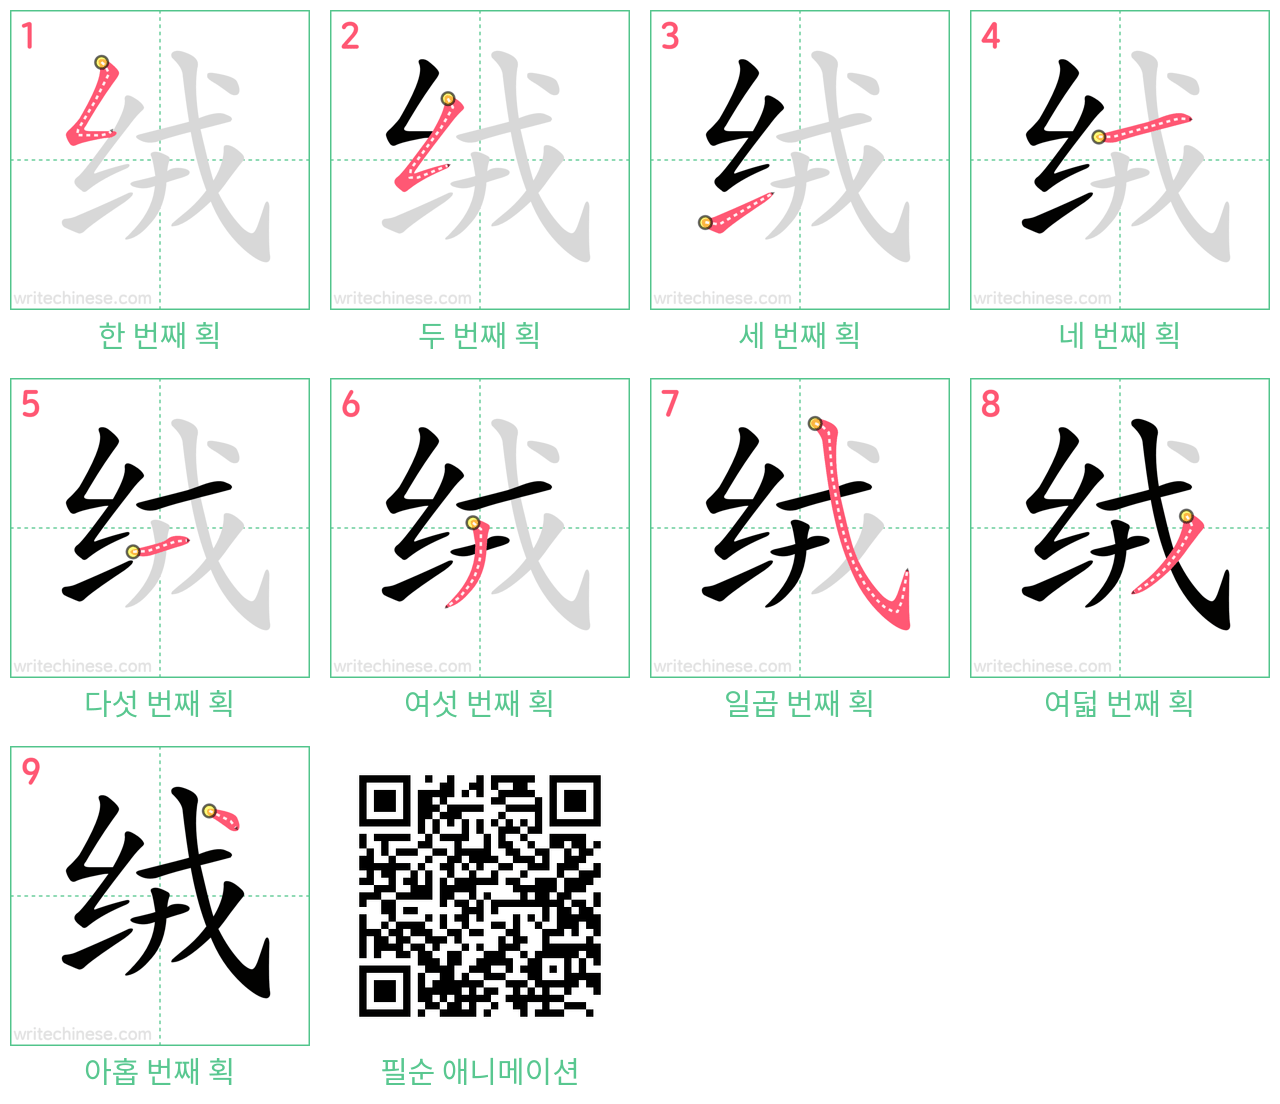 绒 step-by-step stroke order diagrams